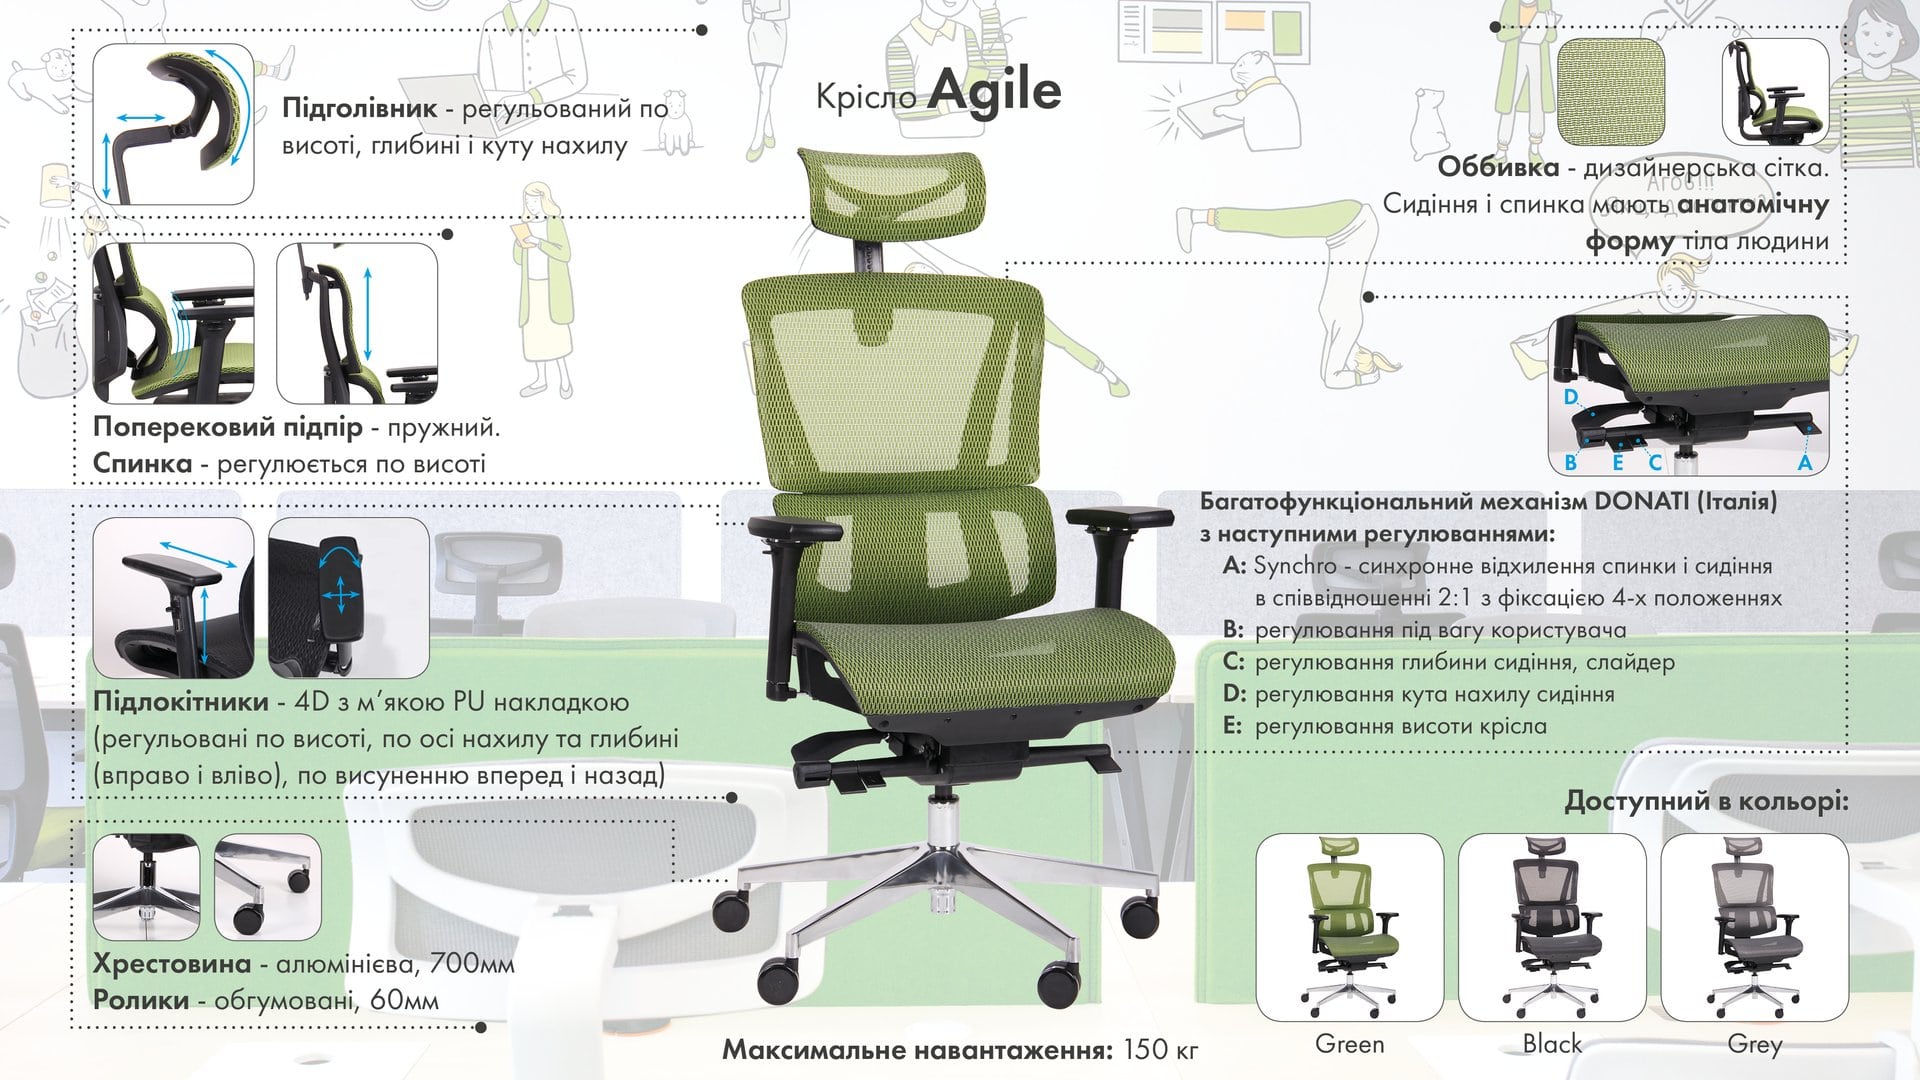 Кресло Agile описание